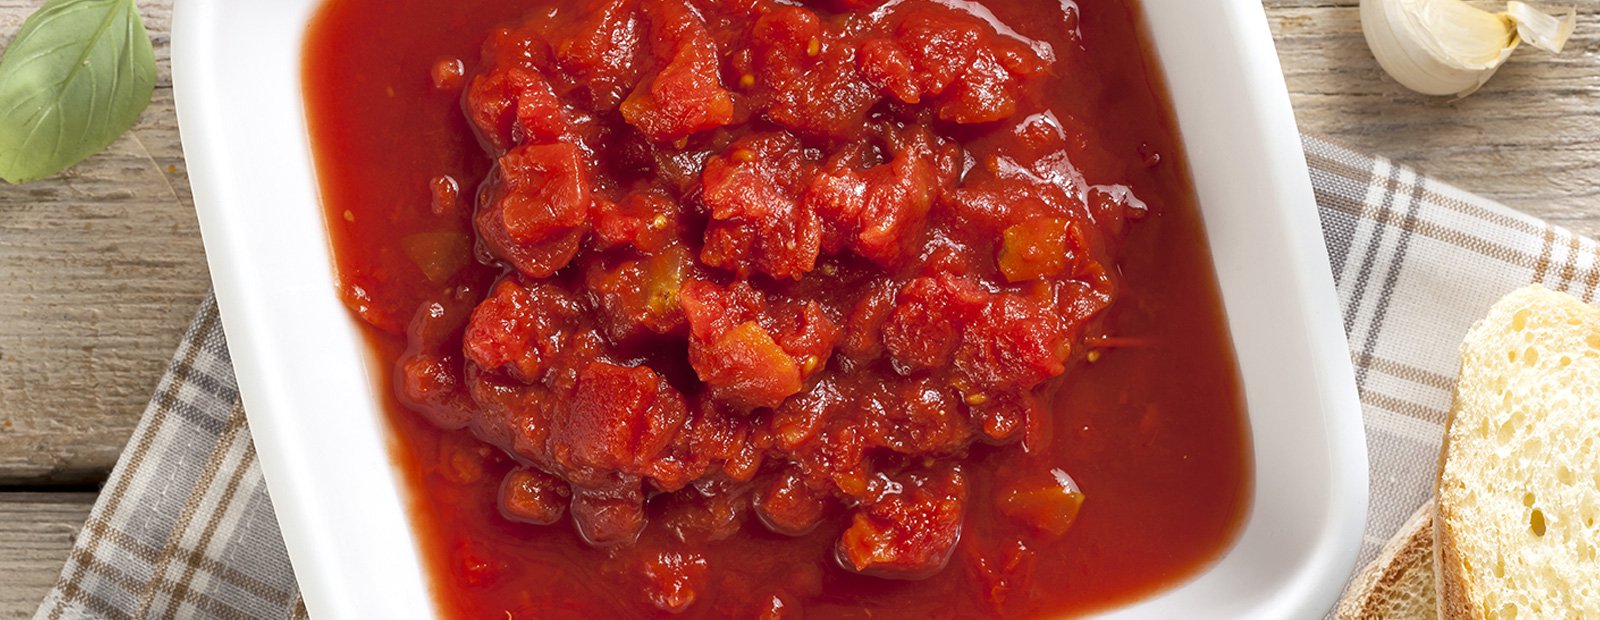 Pulpa de tomate: cómo usarla en tus recetas